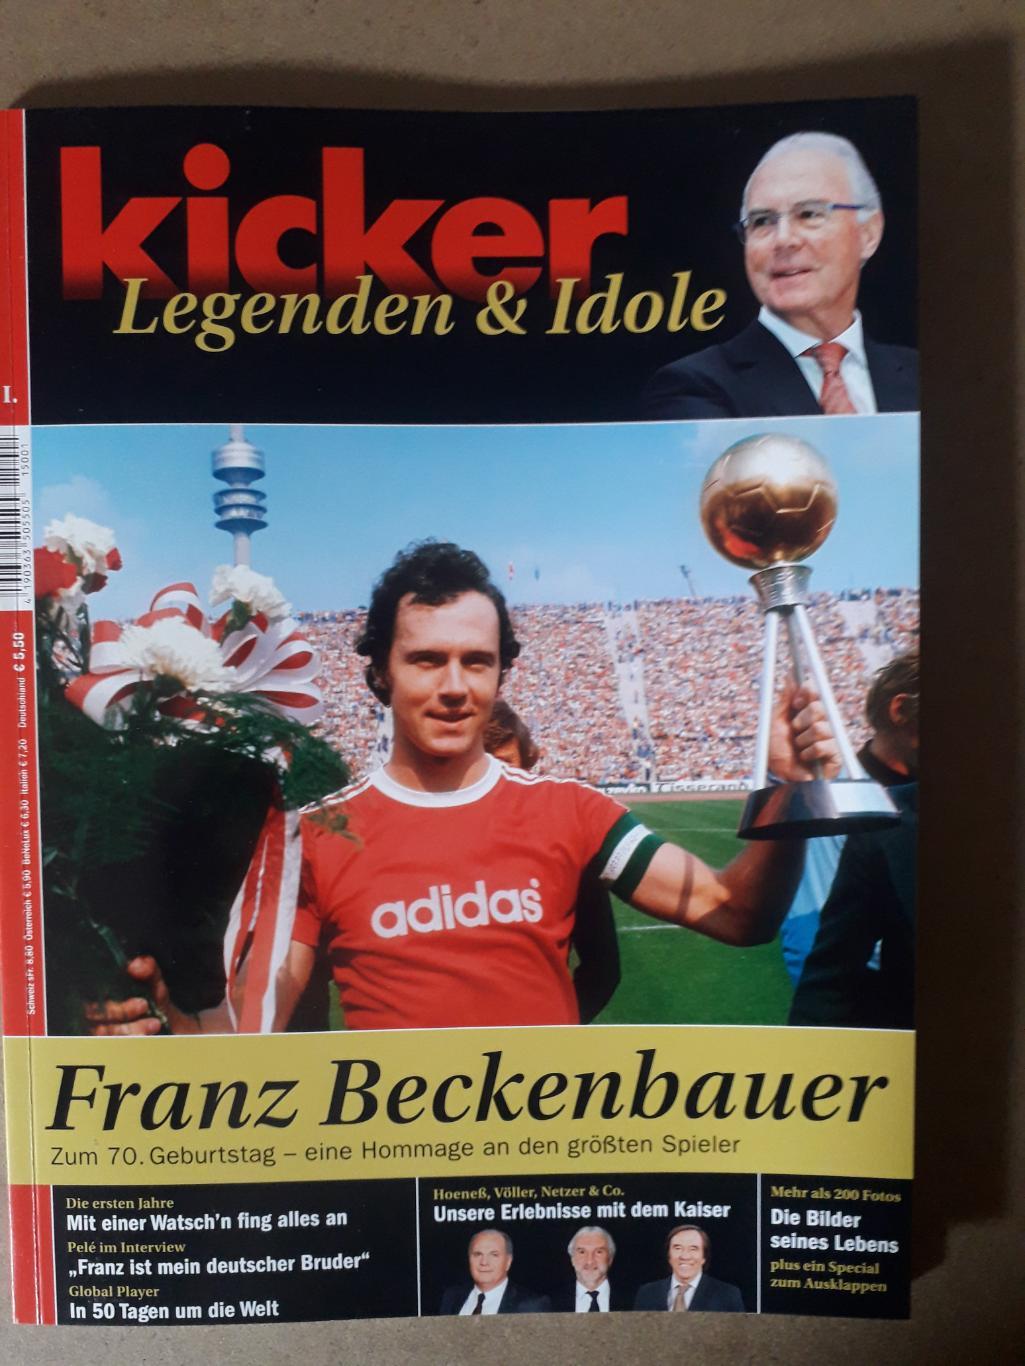 Kicker Legenden & Idole Franz Beckenbauer